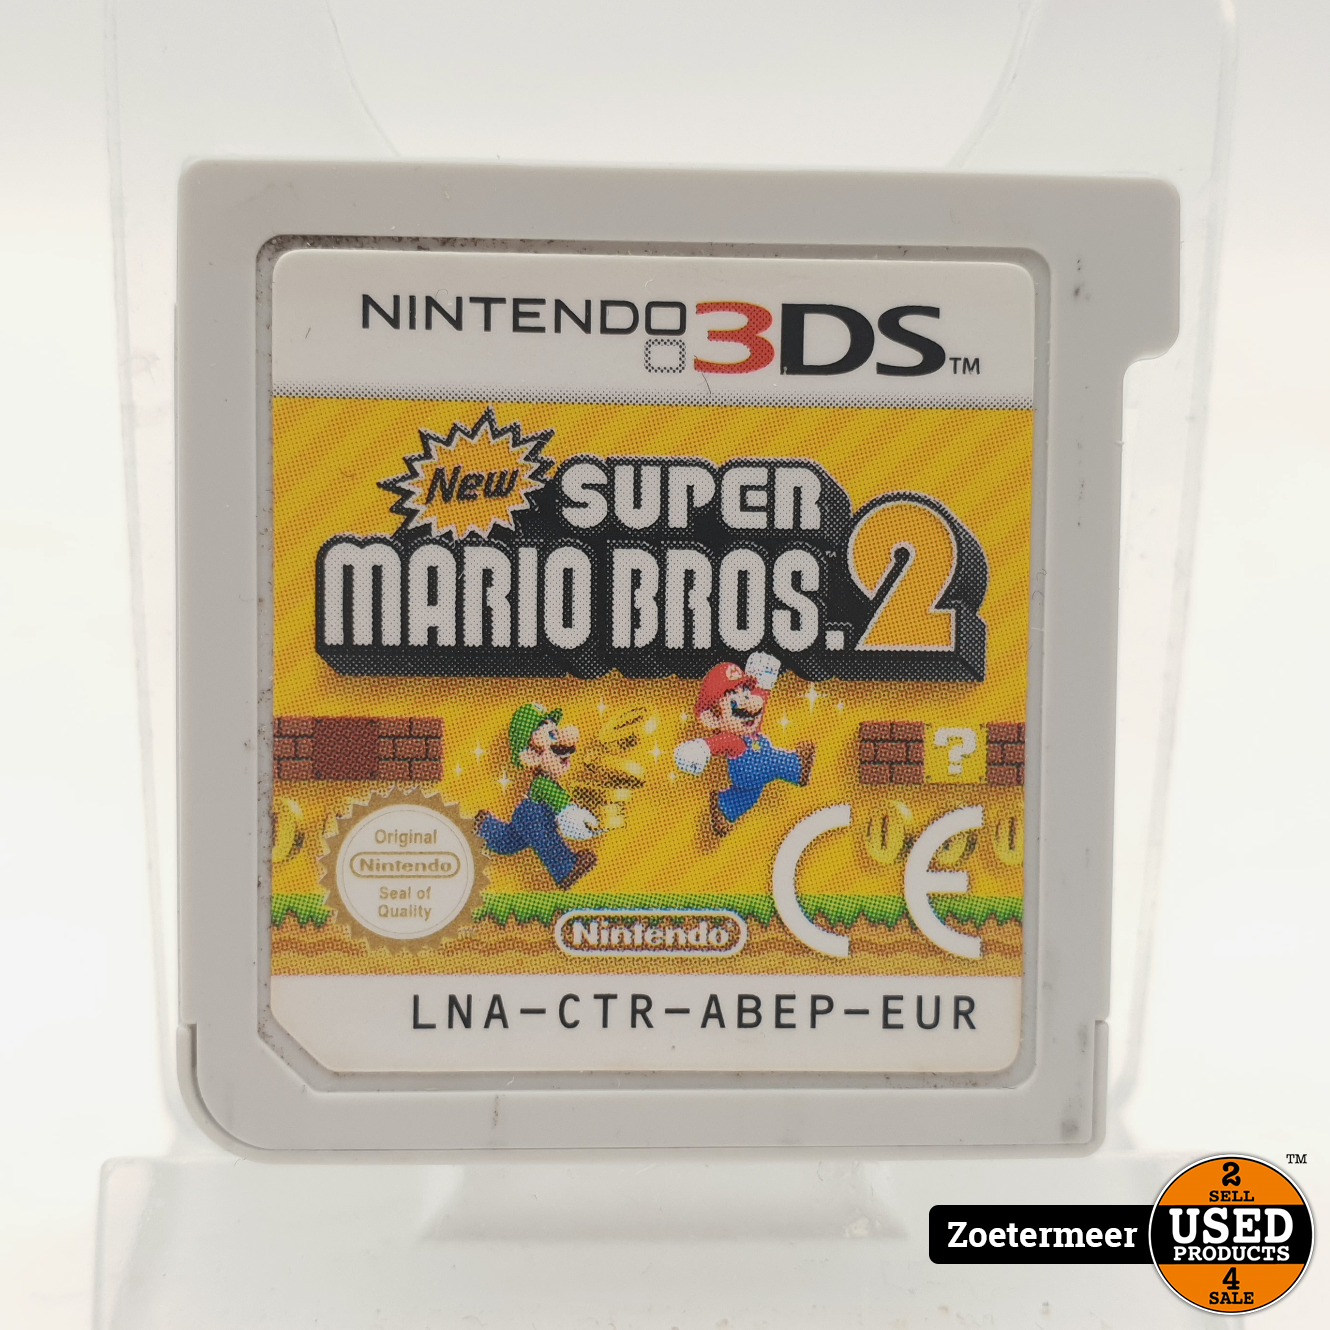 hoofd heelal weer Nintendo New Super Mario Bros. 2 3DS - Used Products Zoetermeer